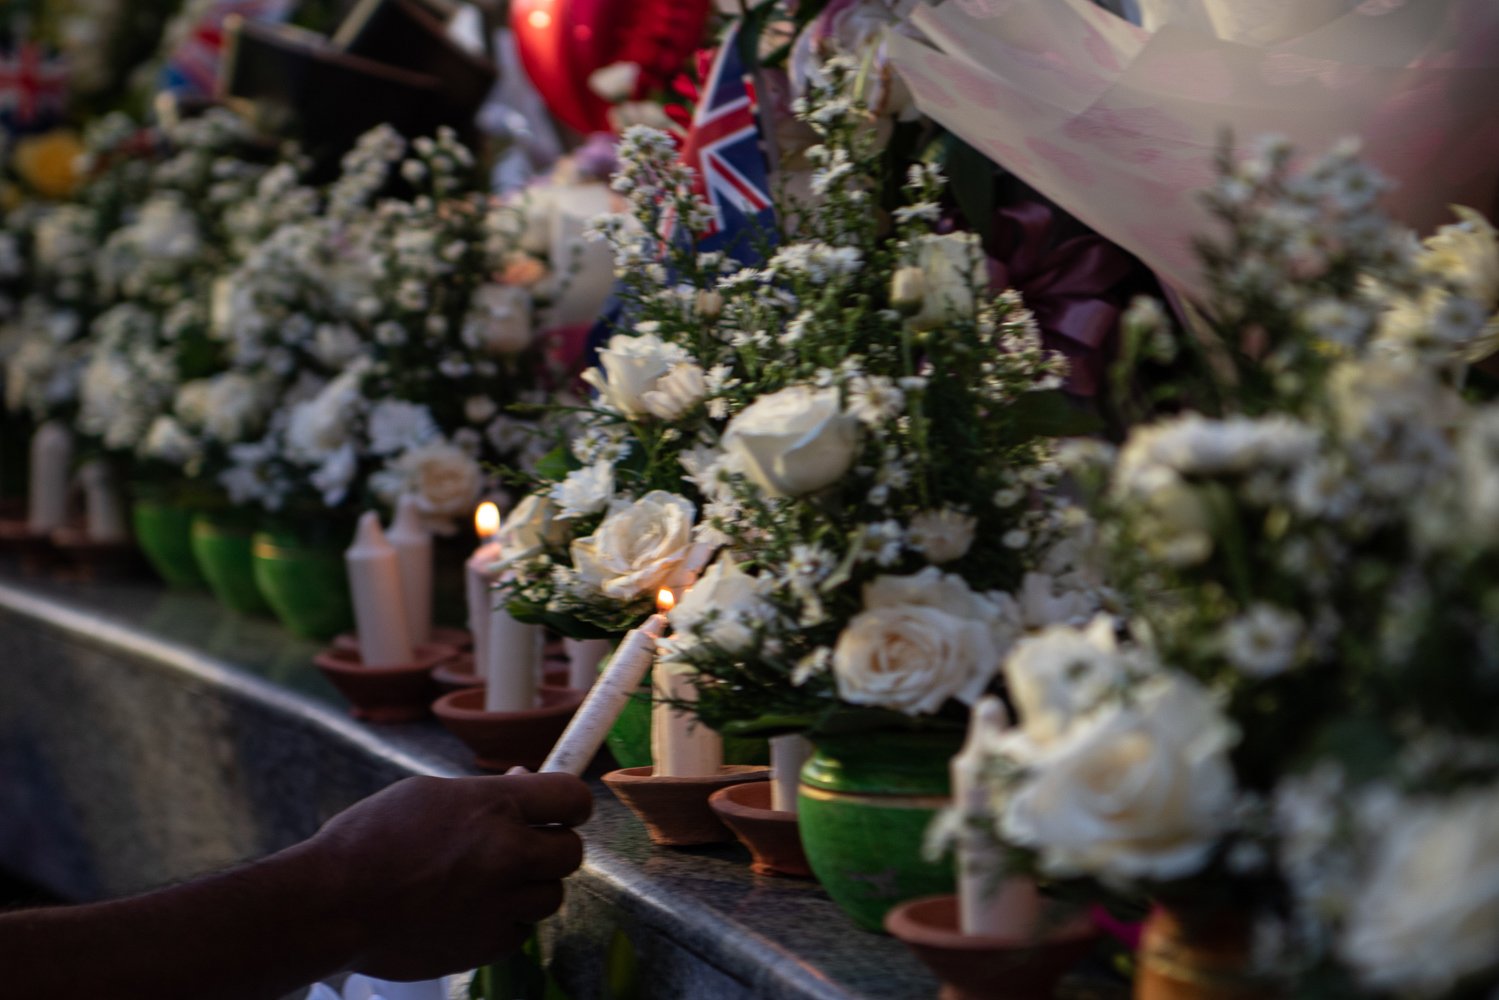 Warga menyalakan lilin saat peringatan 20 tahun tragedi bom Bali di Monumen Bom Bali, Badung, Bali, Rabu (12/10/2022). Peringatan tragedi terorisme yang menewaskan 202 orang tersebut dilakukan dengan doa bersama, tabur bunga dan penyalaan lilin oleh warga, keluarga serta kerabat korban. 